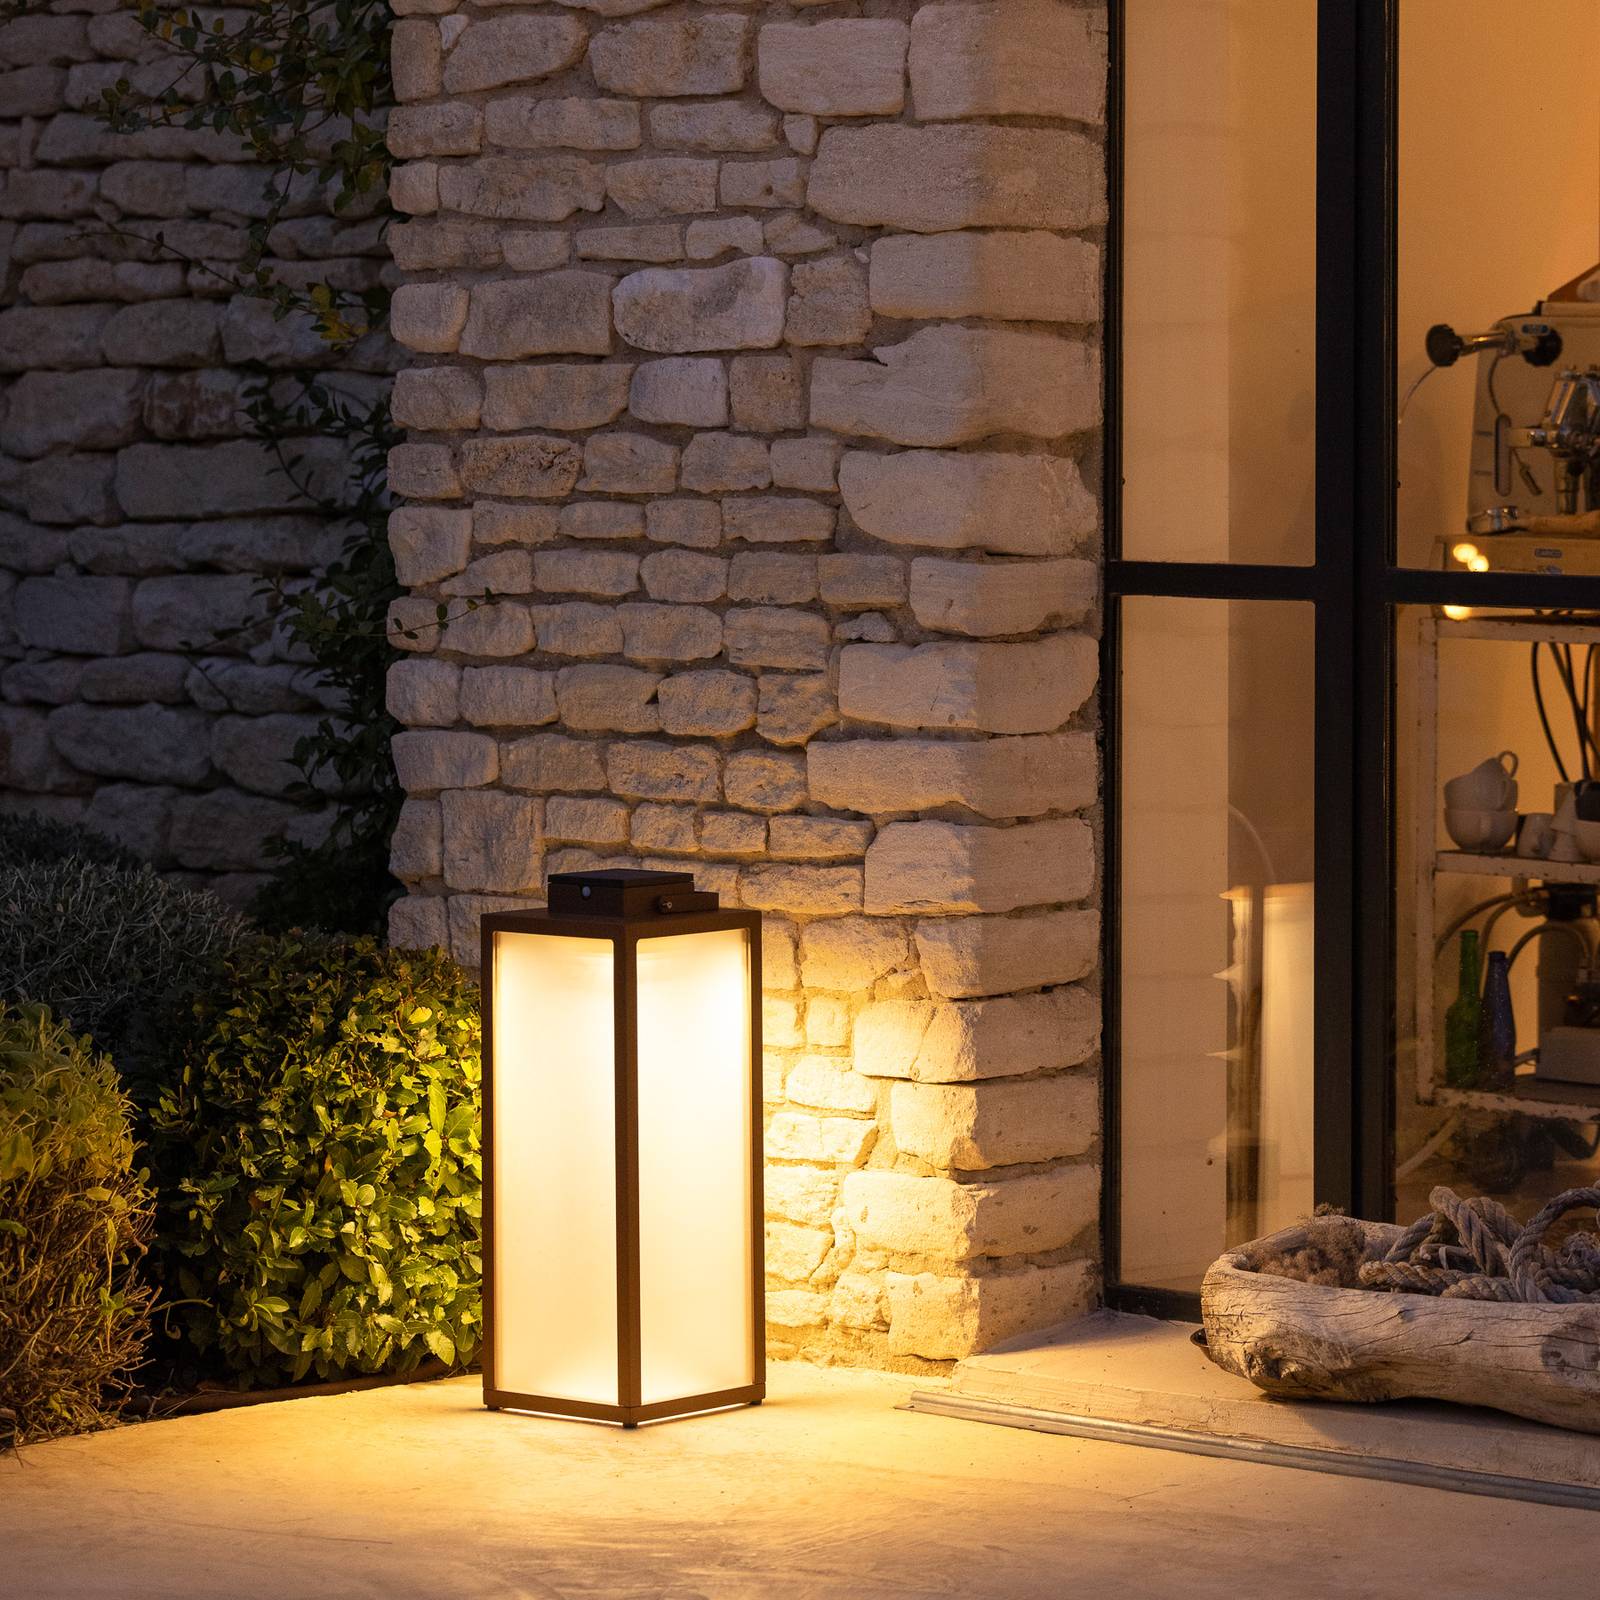 Image of Les Jardins Lanterne solaire LED Tradition, corten, hauteur 65 cm 3561619002351